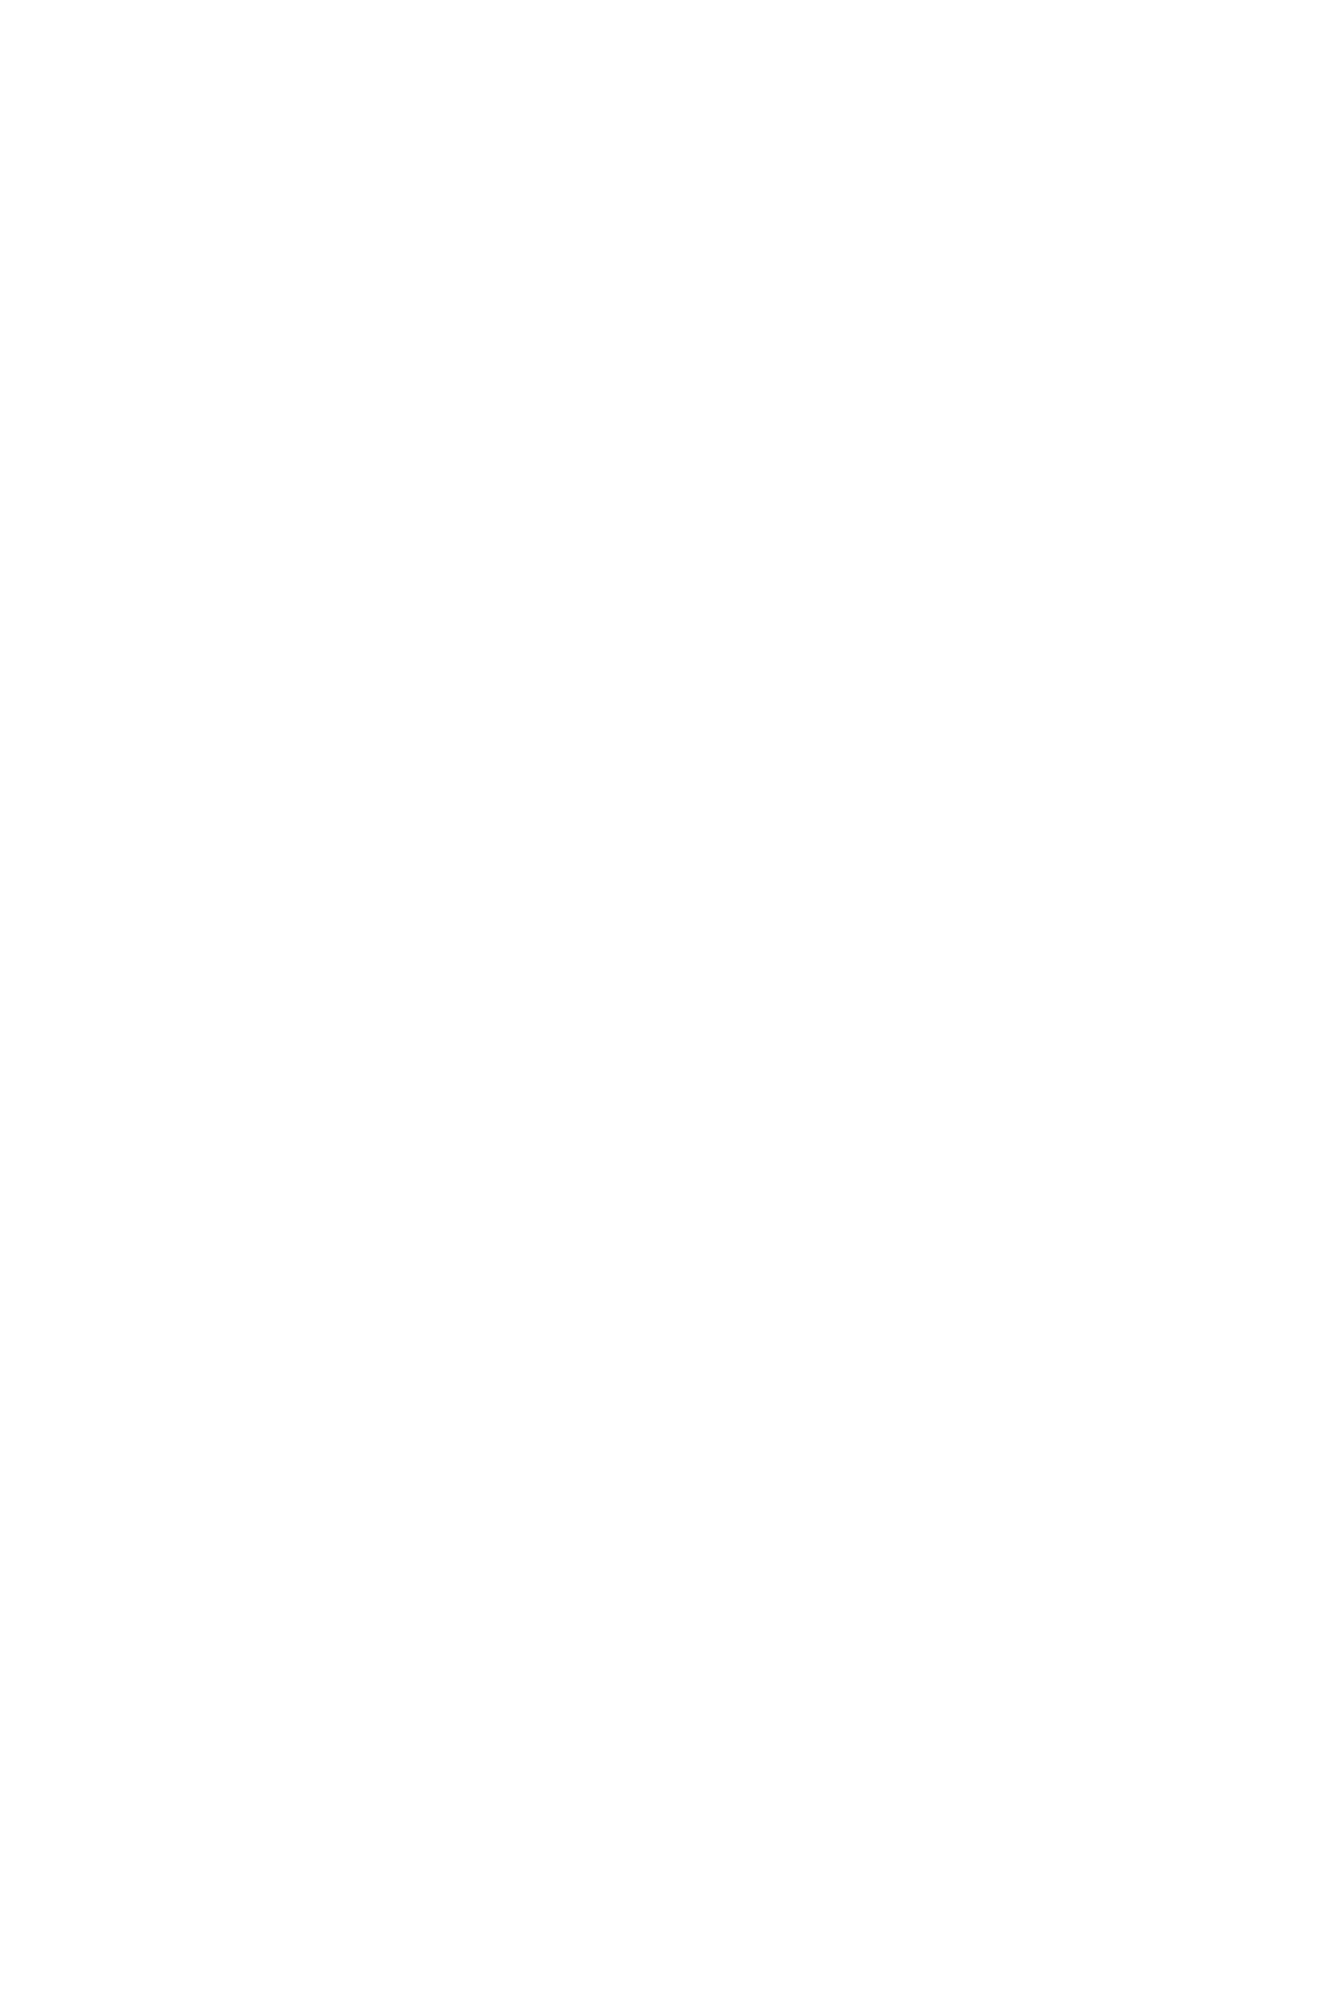 Русоволосая девушка в красной блузке пишет в блокноте и смотрит на зрителя, библиотека иностранной литературы, Москва, художественный репортаж, фотограф Анталия, фотосессия в анталии, фотограф Москва. Георгий Безбородов